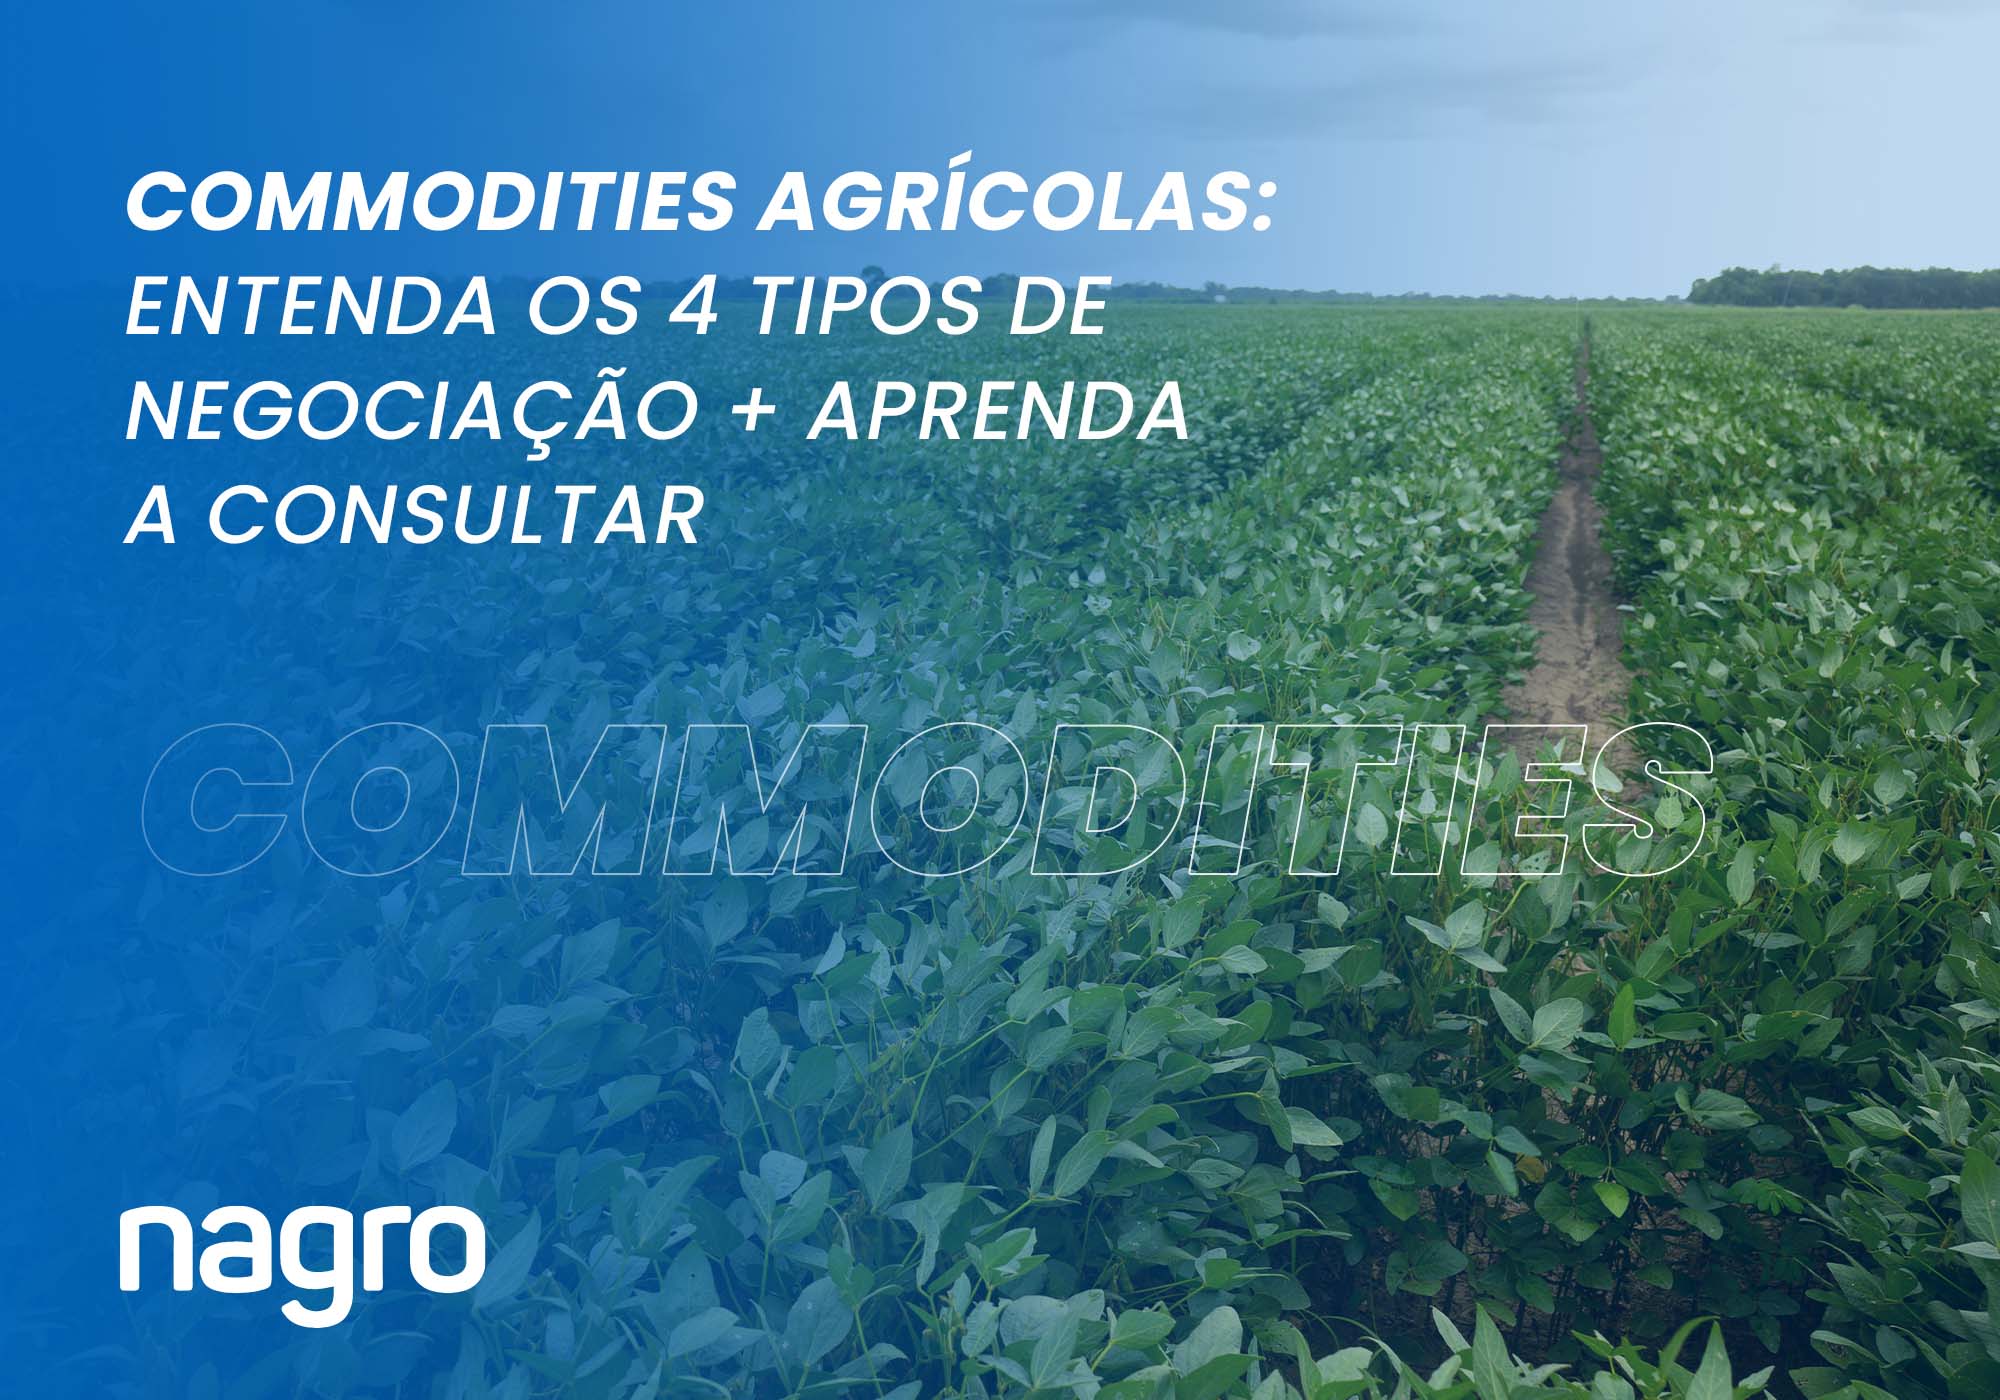 Commodities agrícolas: entenda os 4 tipos de negociação + veja como consultar